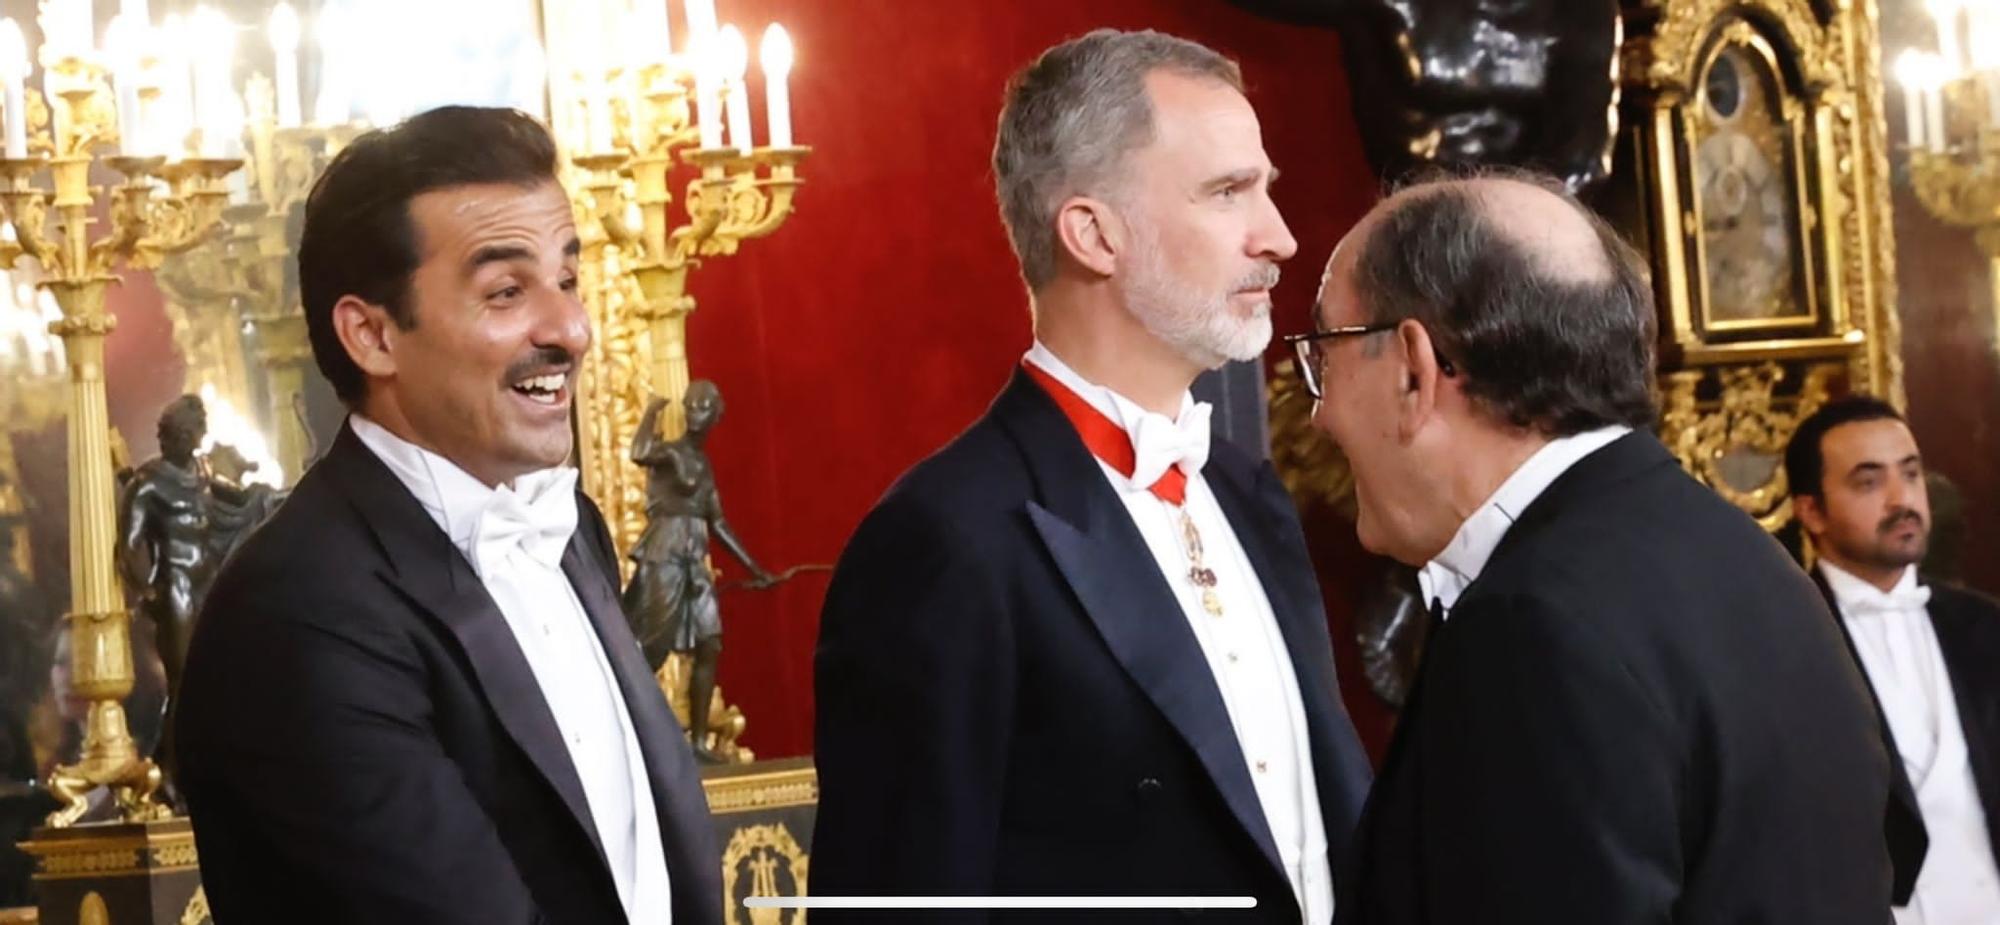 El presidente de Iberdrola, Ignacio Sánchez Galán, saluda al emir de Catar, en el Palacio de la Zarzuela.